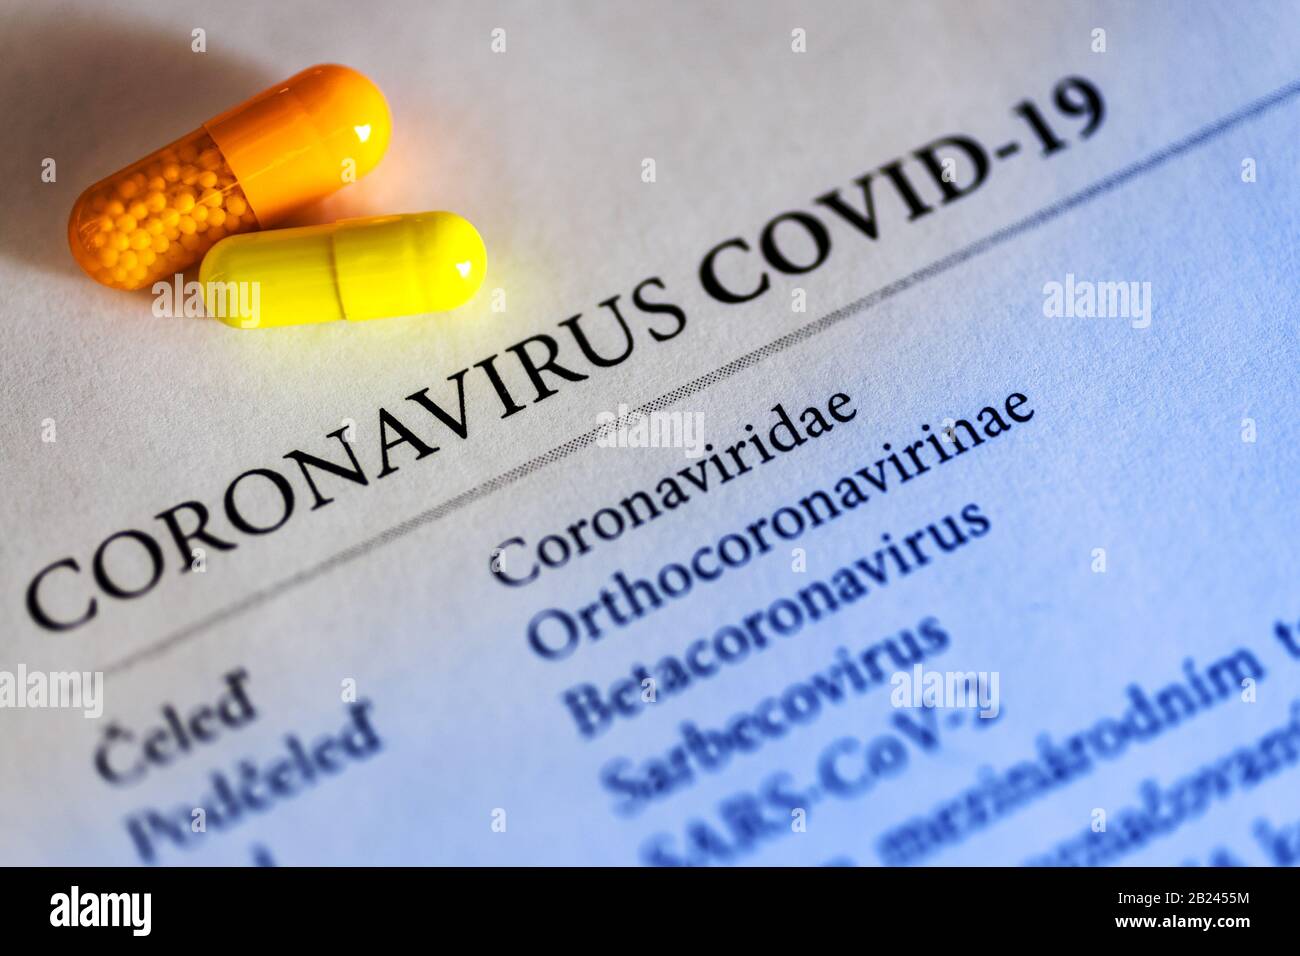 Virus del coronavirus Covid-19 pericoloso in laboratorio - infezione del virus 2019-nCoV. Rischio di pandemia globale dovuto all'epidemia di coronavirus Foto Stock